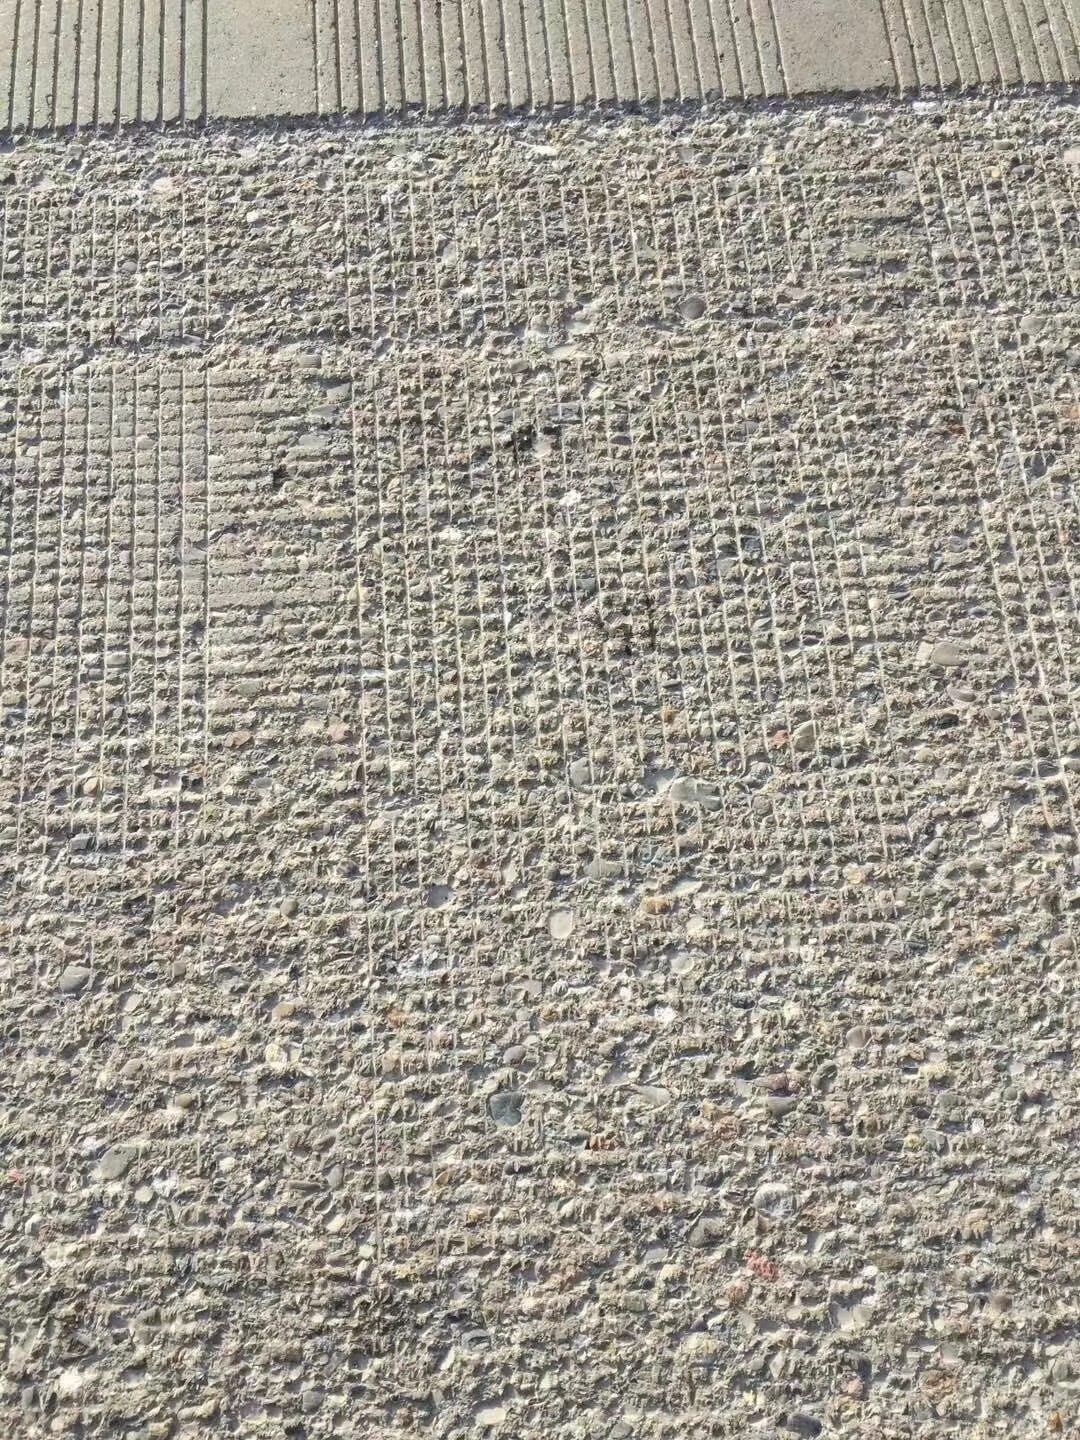 贵州省贵阳市混凝土路面起砂修复施工步骤